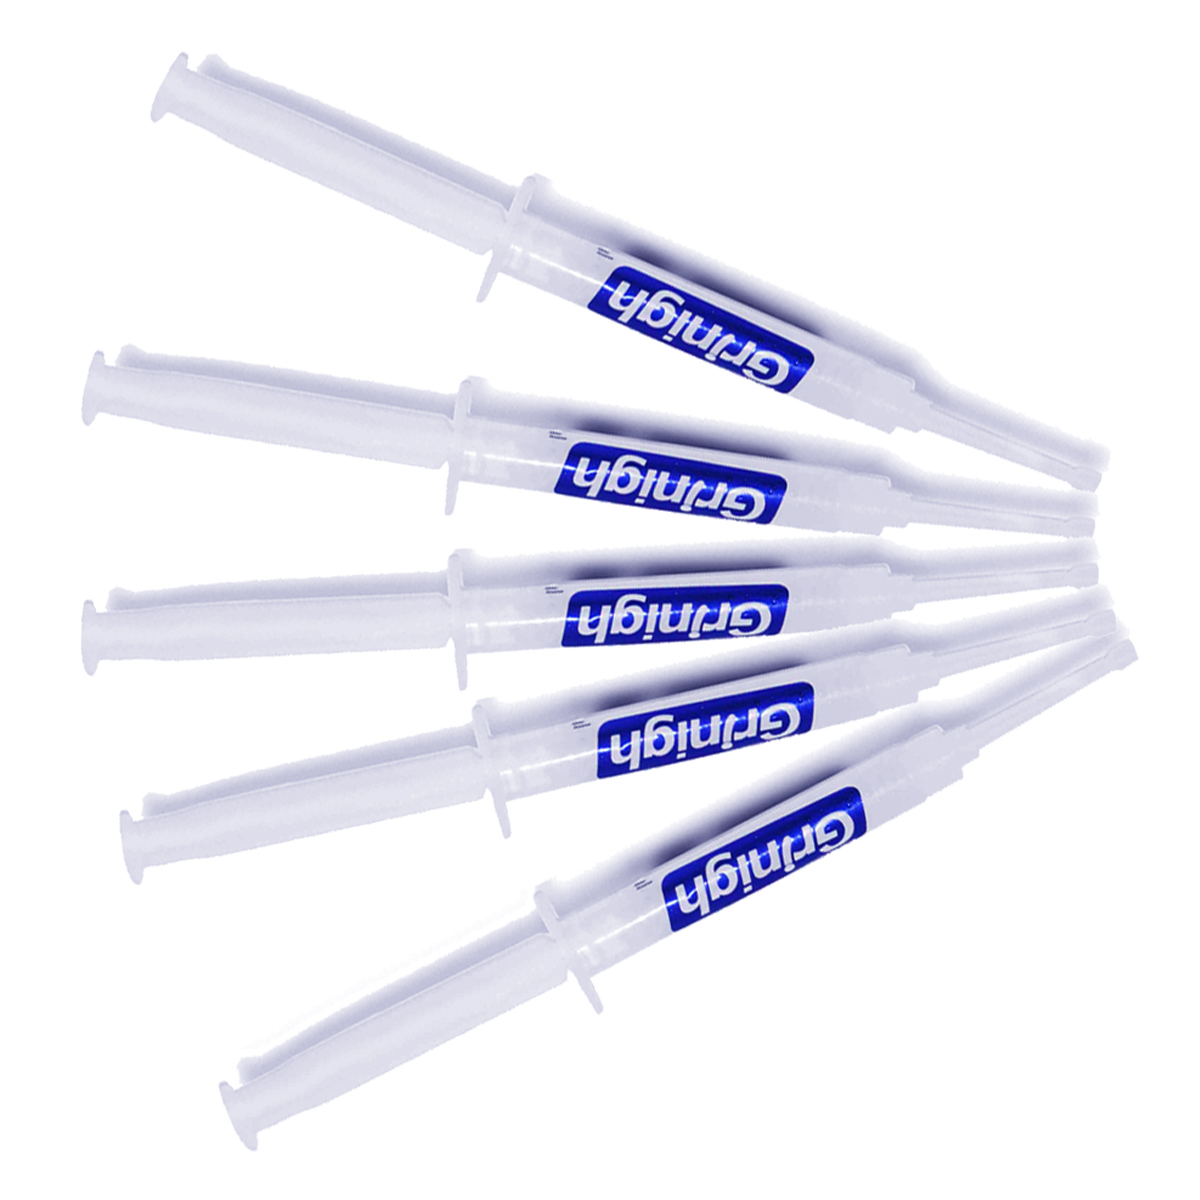 Grin365 dientes de 3 ml que blanquean el gel jeringas de reemplazo para sistema de blanqueamiento - Kit de recarga con más de 15 Tratos